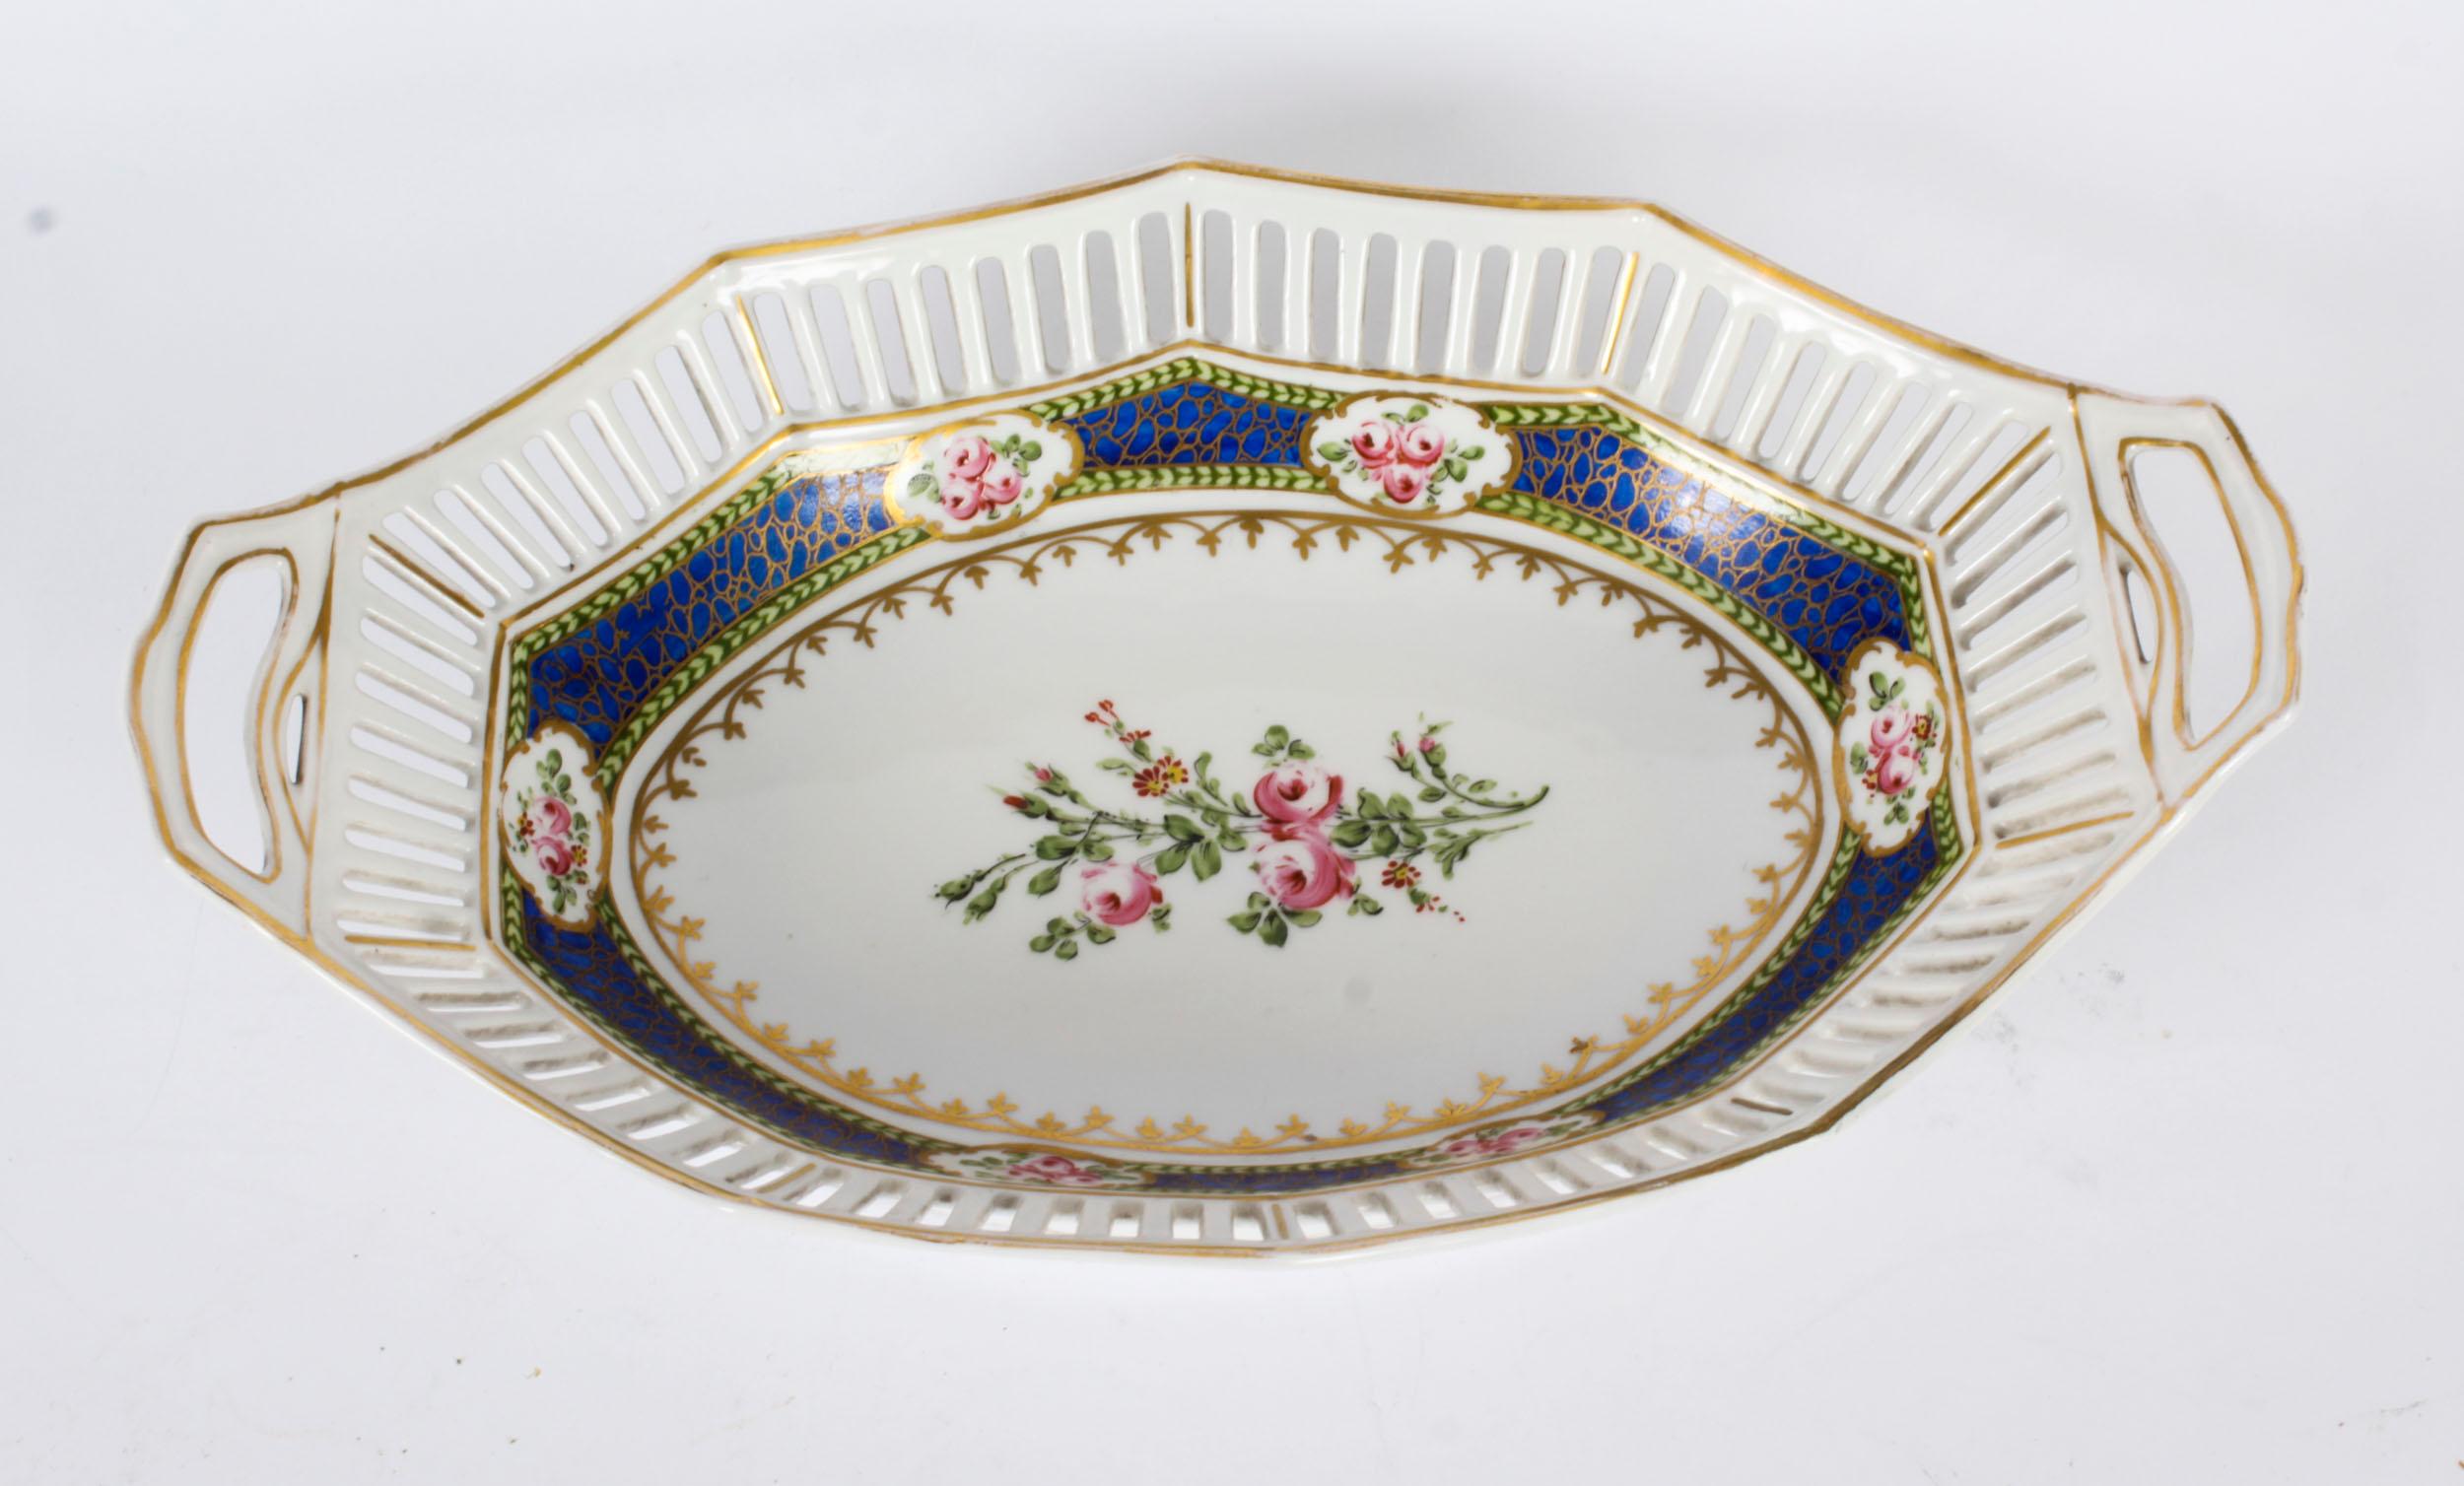 Dies ist eine dekorative antike Französisch Sèvres ovale Porzellanschale, aus CIRCA 1880.

Die ovale durchbrochene Bordüre mit vergoldeten Akzenten und einer auffälligen Innenbordüre in Bleu Royal ist in der Mitte meisterhaft von Hand mit Blumen